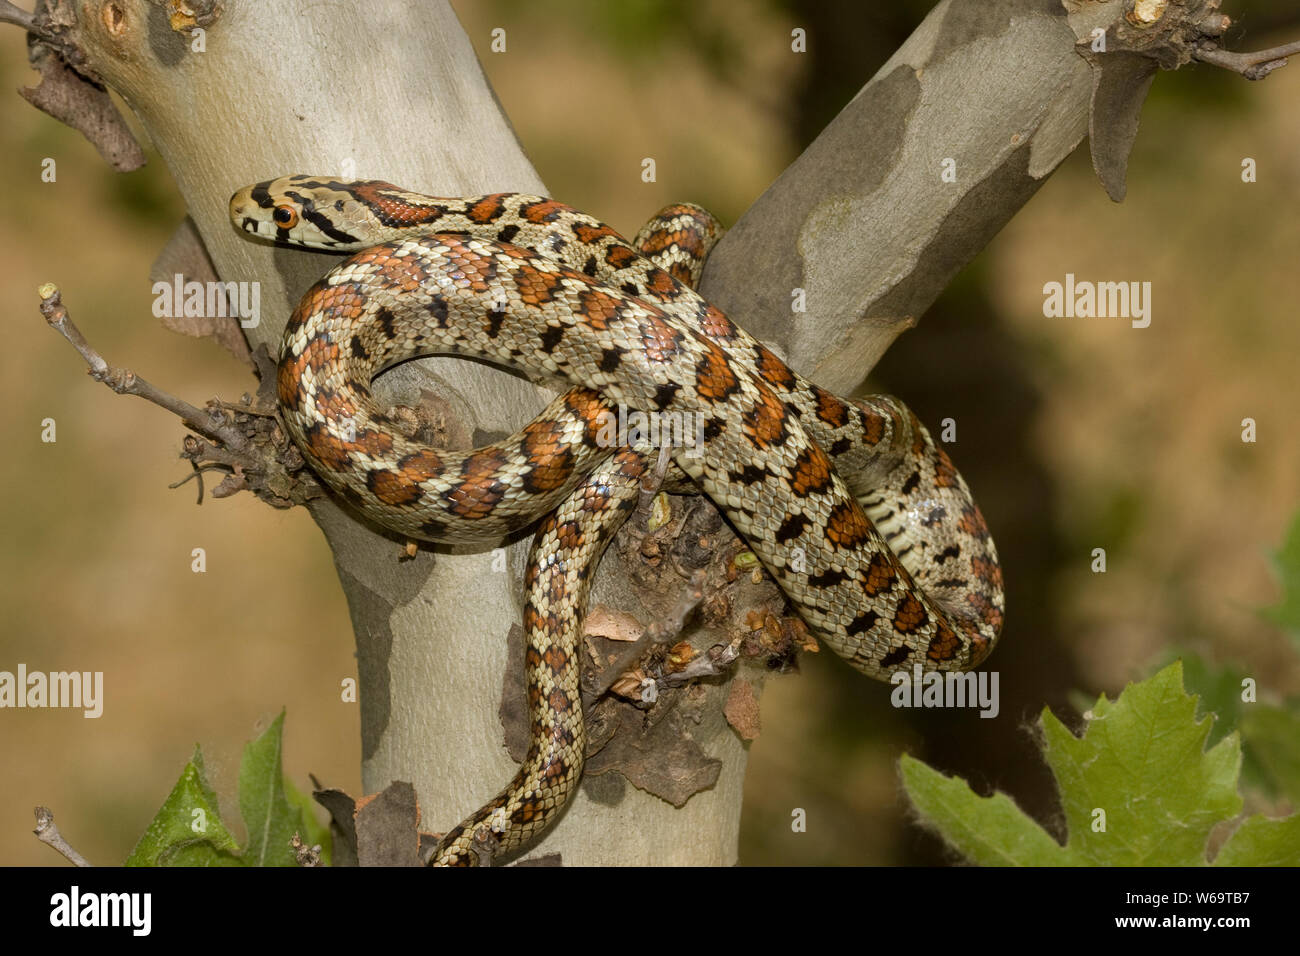 Leopard Snake (Zamenis situla) Stock Photo